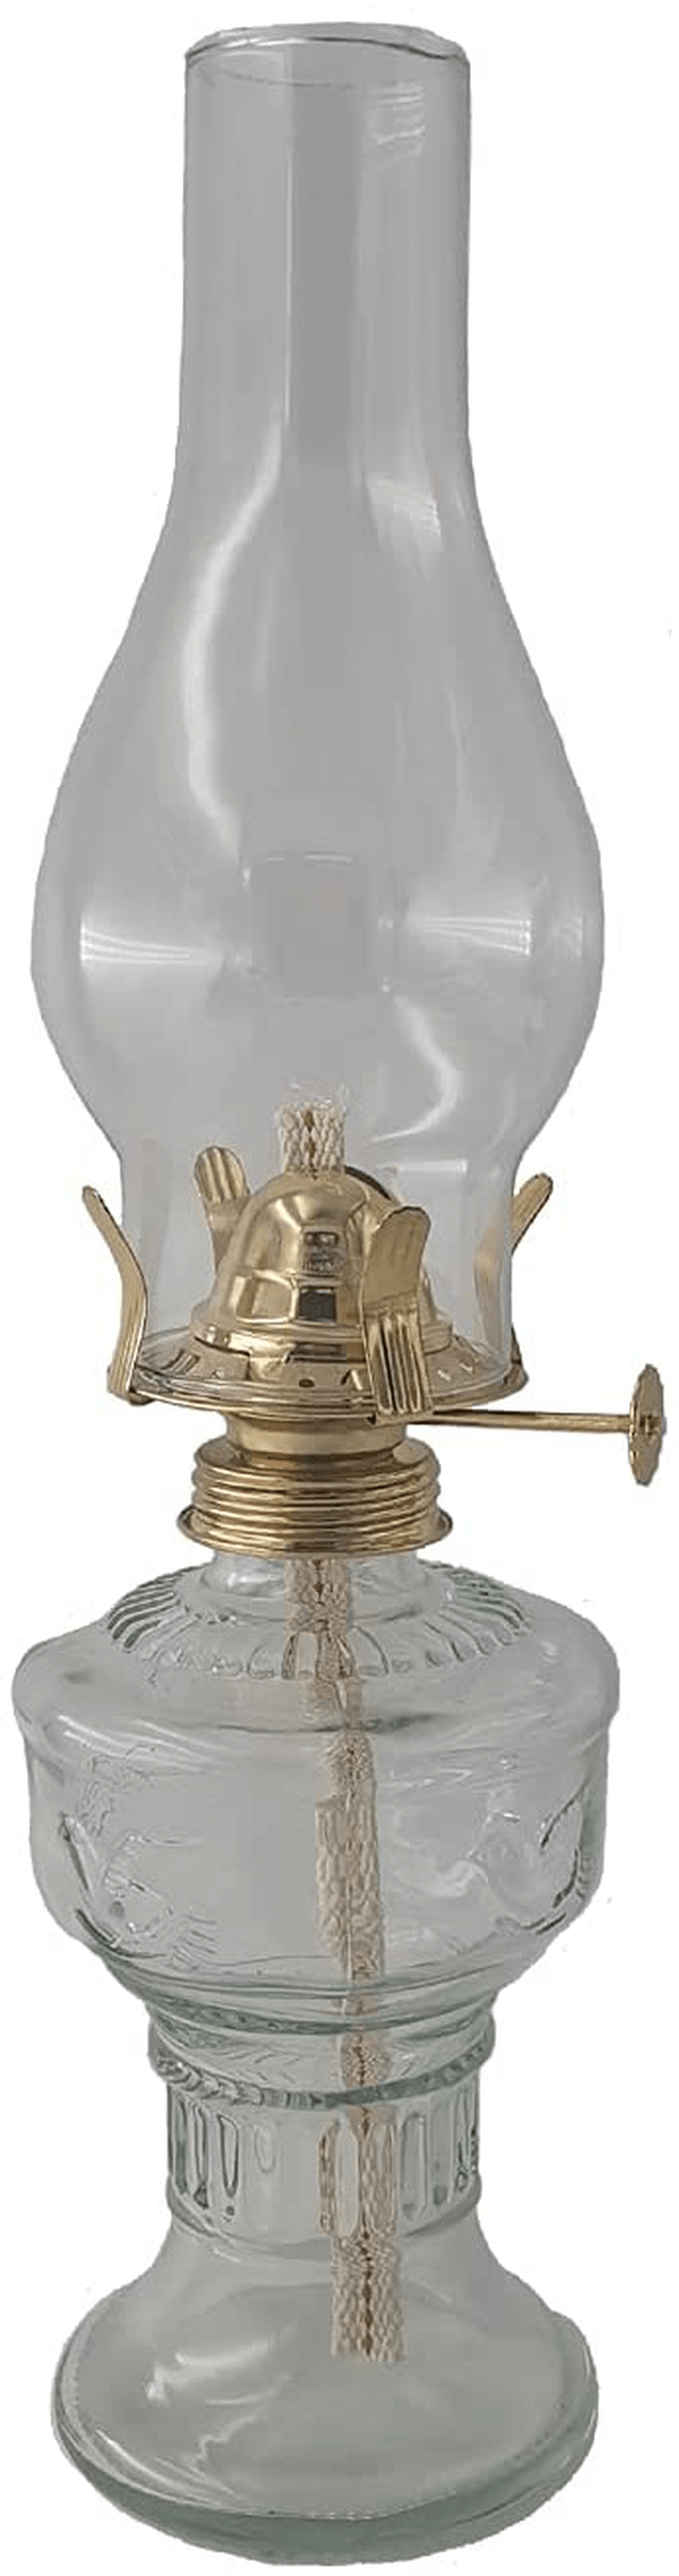 amanigo Oil Lamp Glass Kerosene Lantern - Classic Oil Lamp for Indoor Use (13 in) Home & Garden > Lighting Accessories > Oil Lamp Fuel amanigo 13 in  